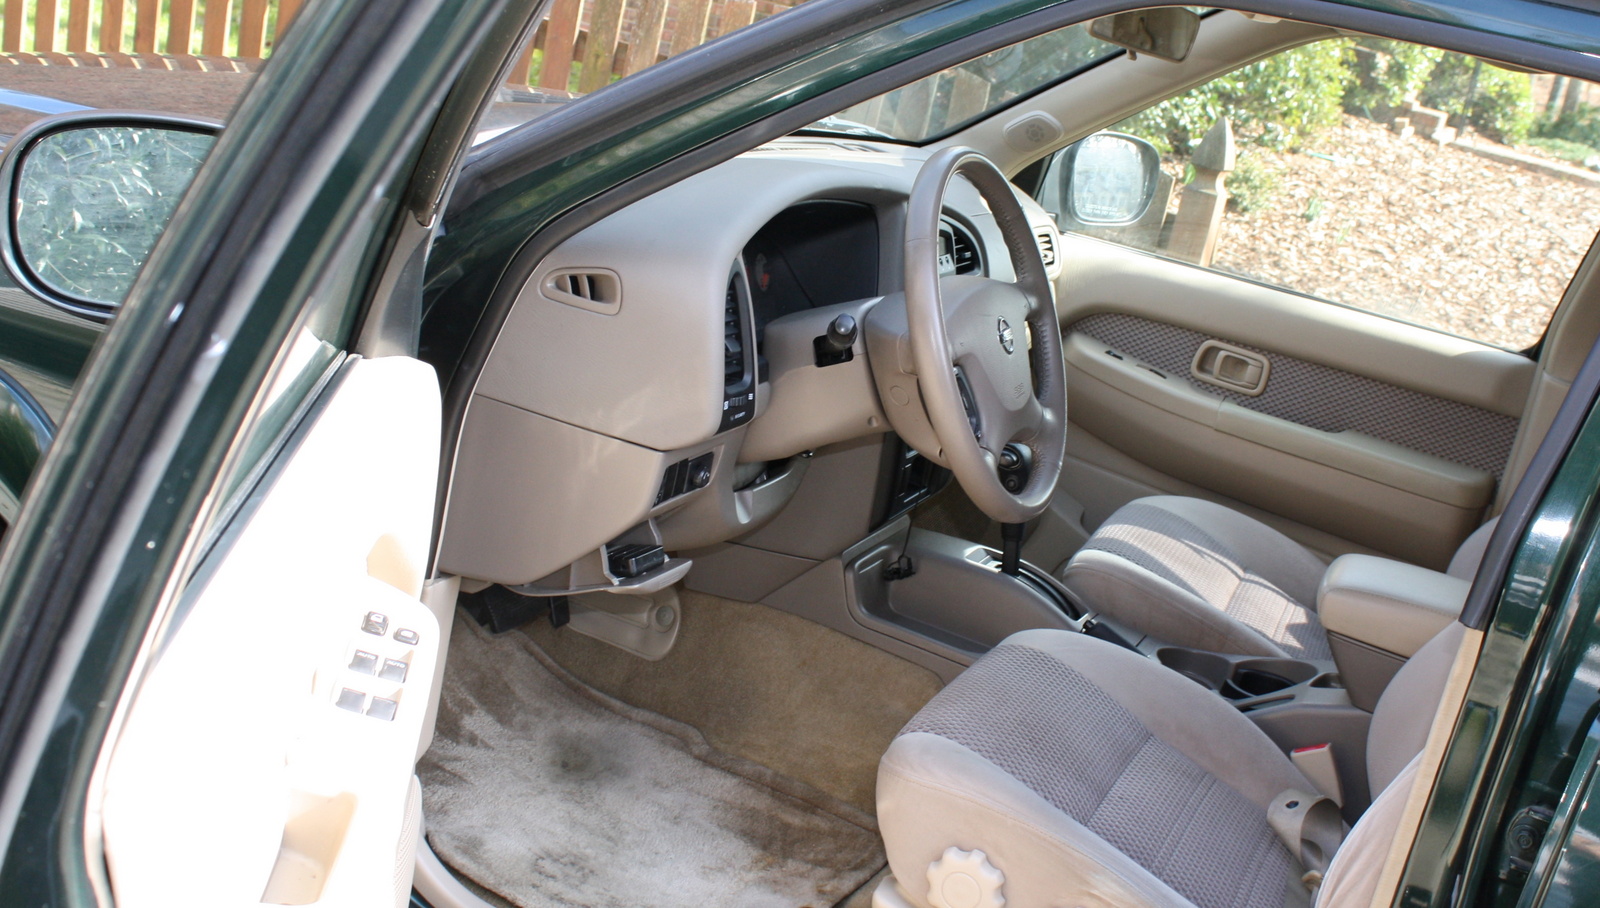 2002 Nissan pathfinder interior pictures